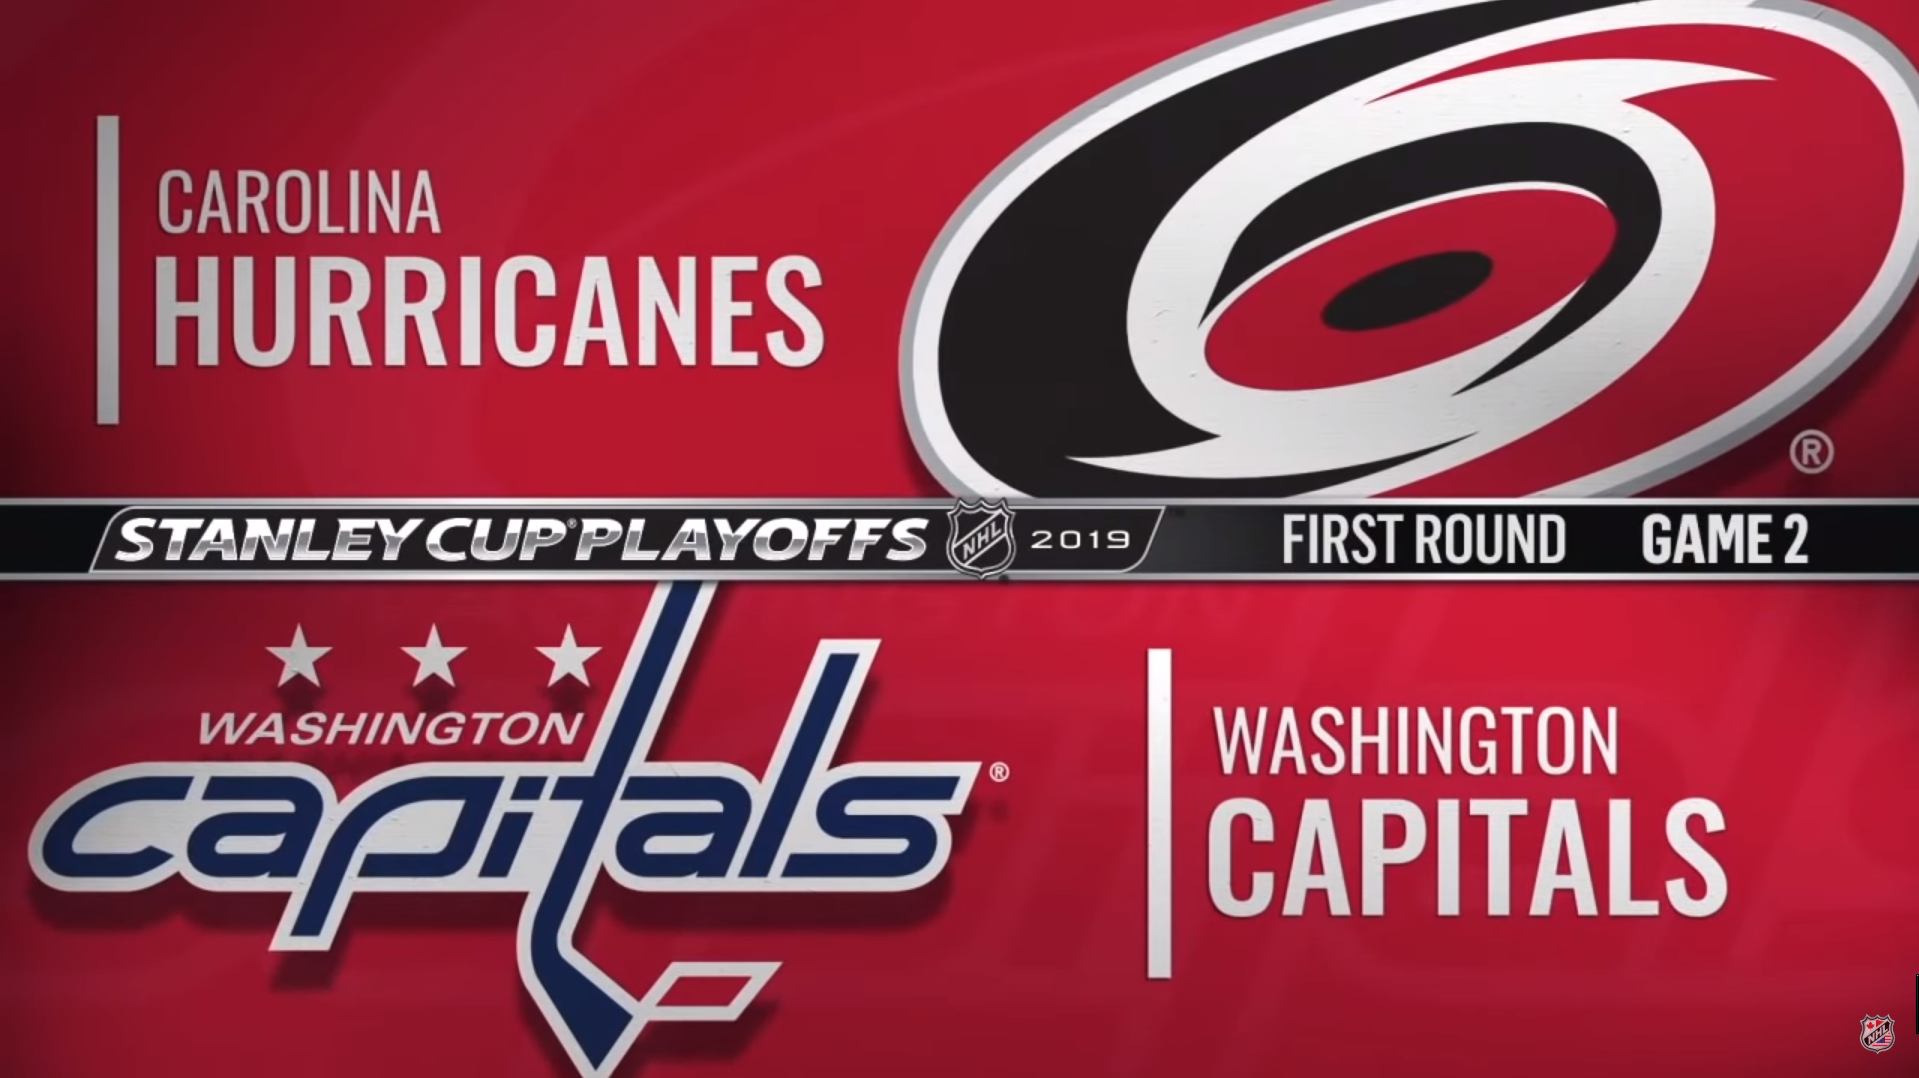 Carolina Hurricanes - Washington Capitals